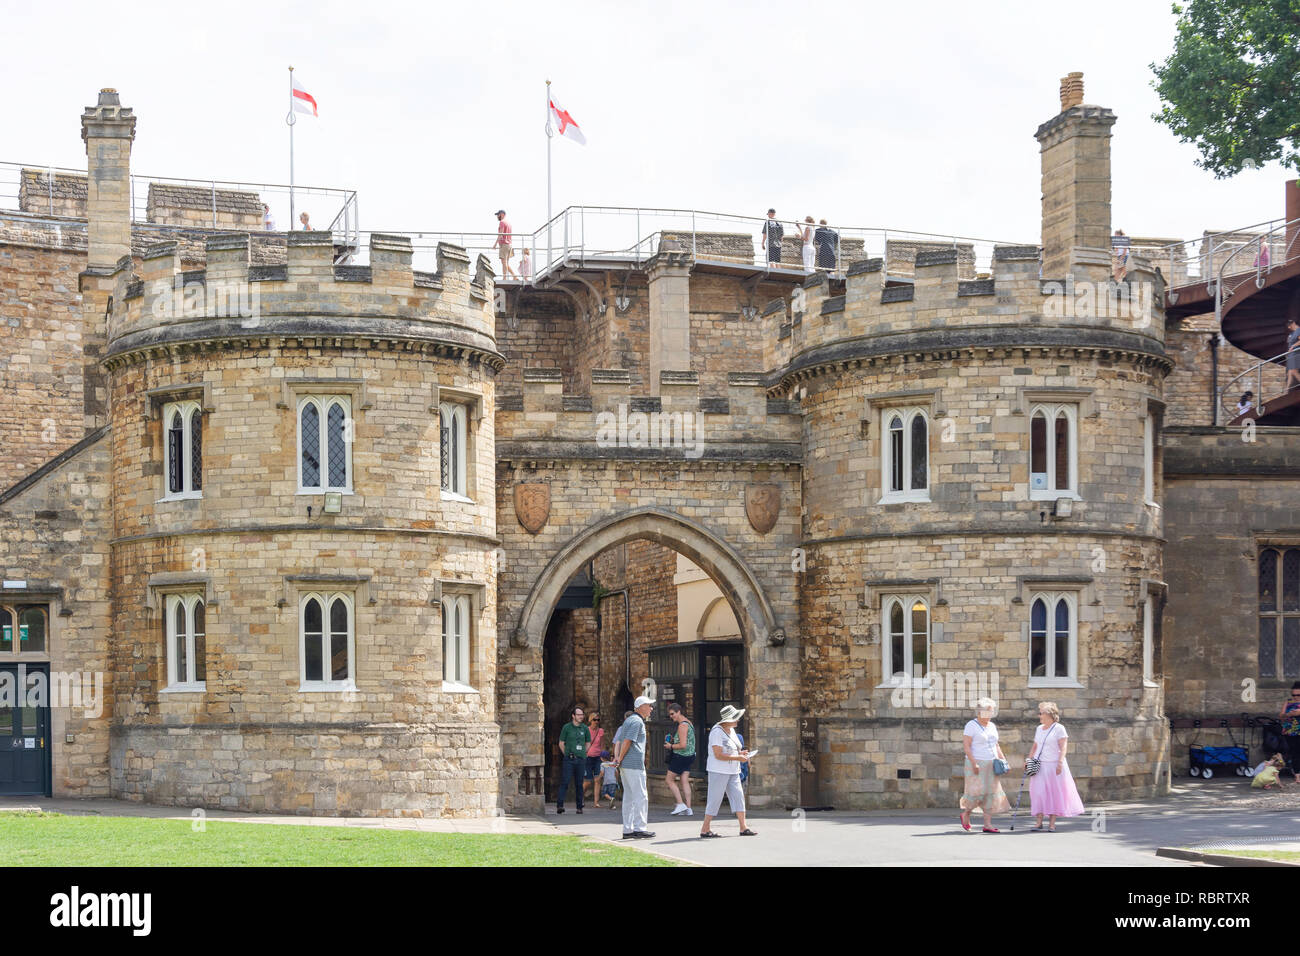 Porte de l'Est du parc du château de Château de Lincoln, Lincoln, Lincolnshire, Angleterre, Royaume-Uni Banque D'Images